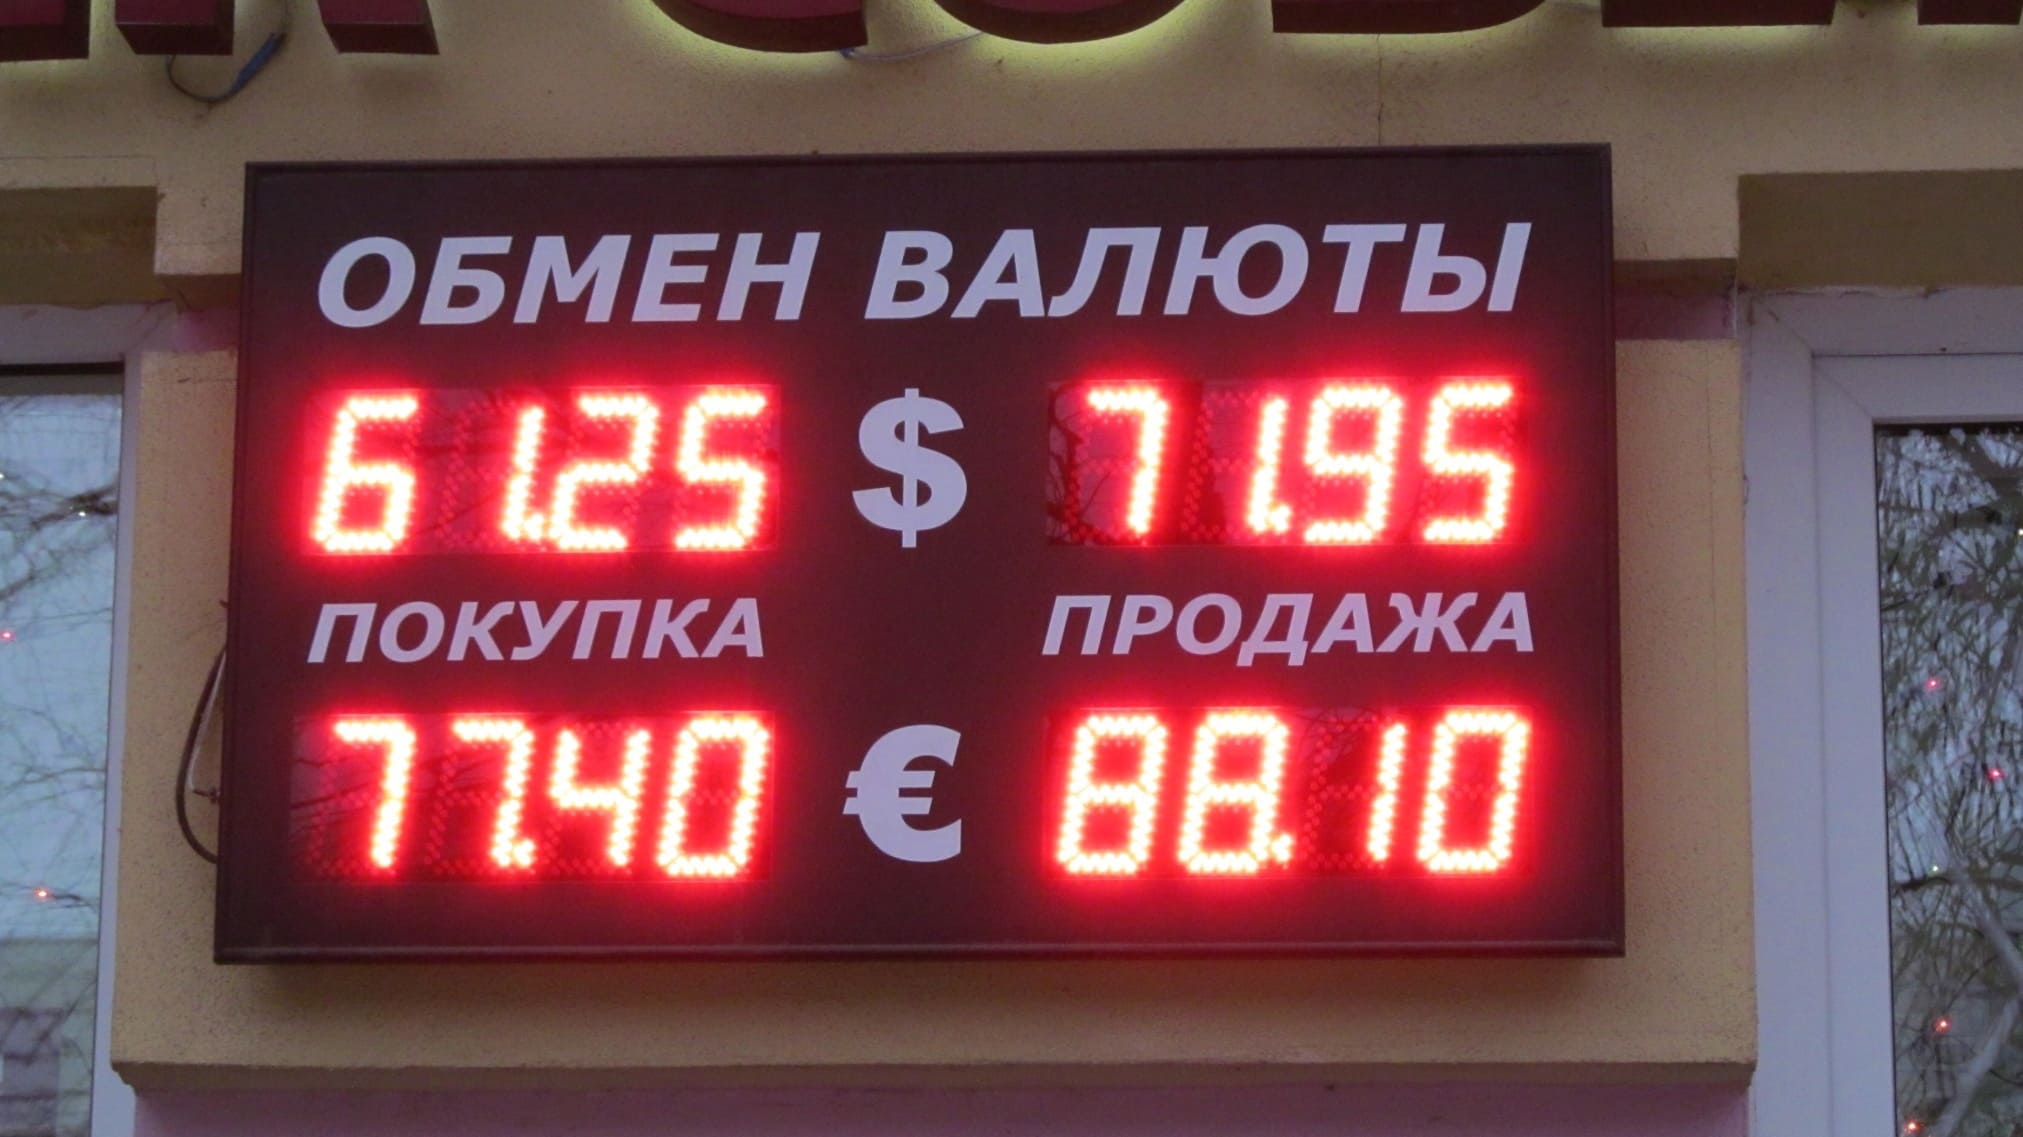 обмен валют курс московский кредитный банк